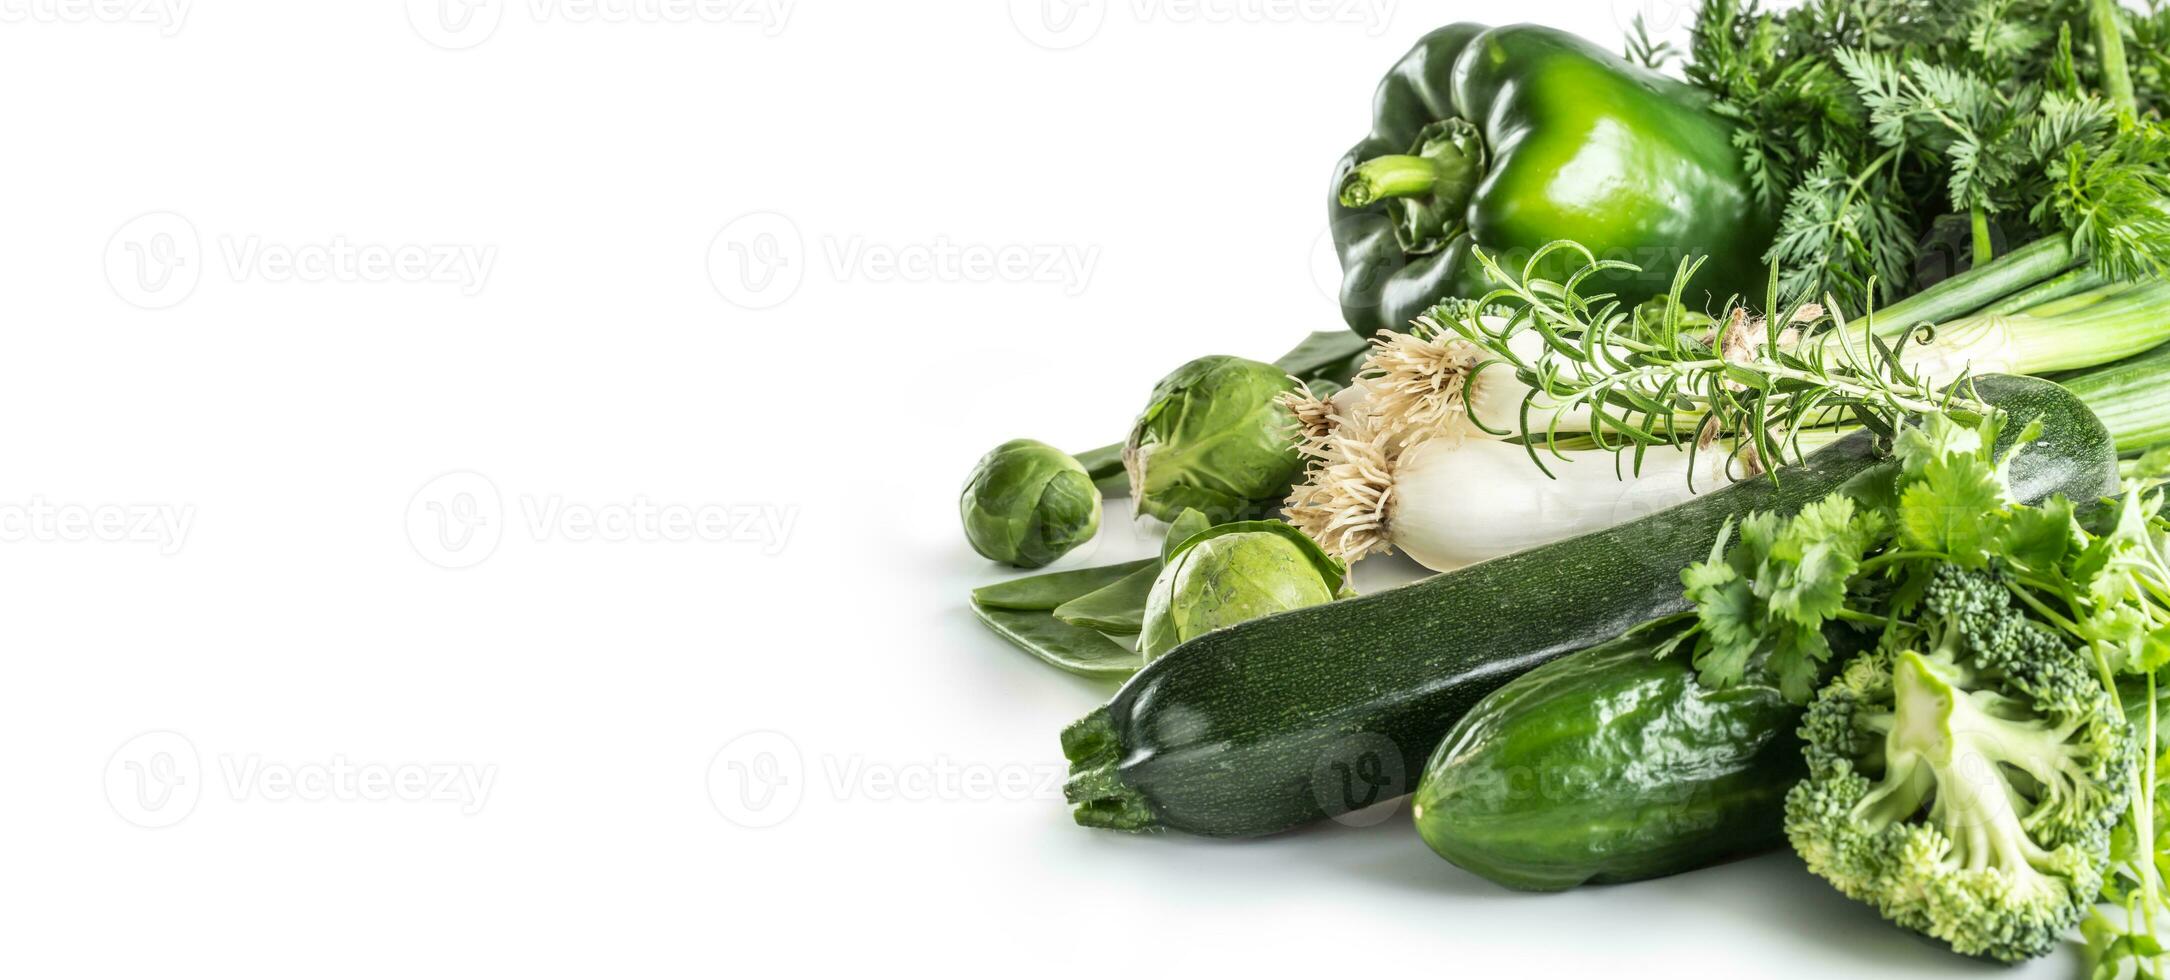 verde fresco vegetal isolado em branco fundo. cebola pepino ervilhas brócolis abobrinha e de outros saudável legumes foto